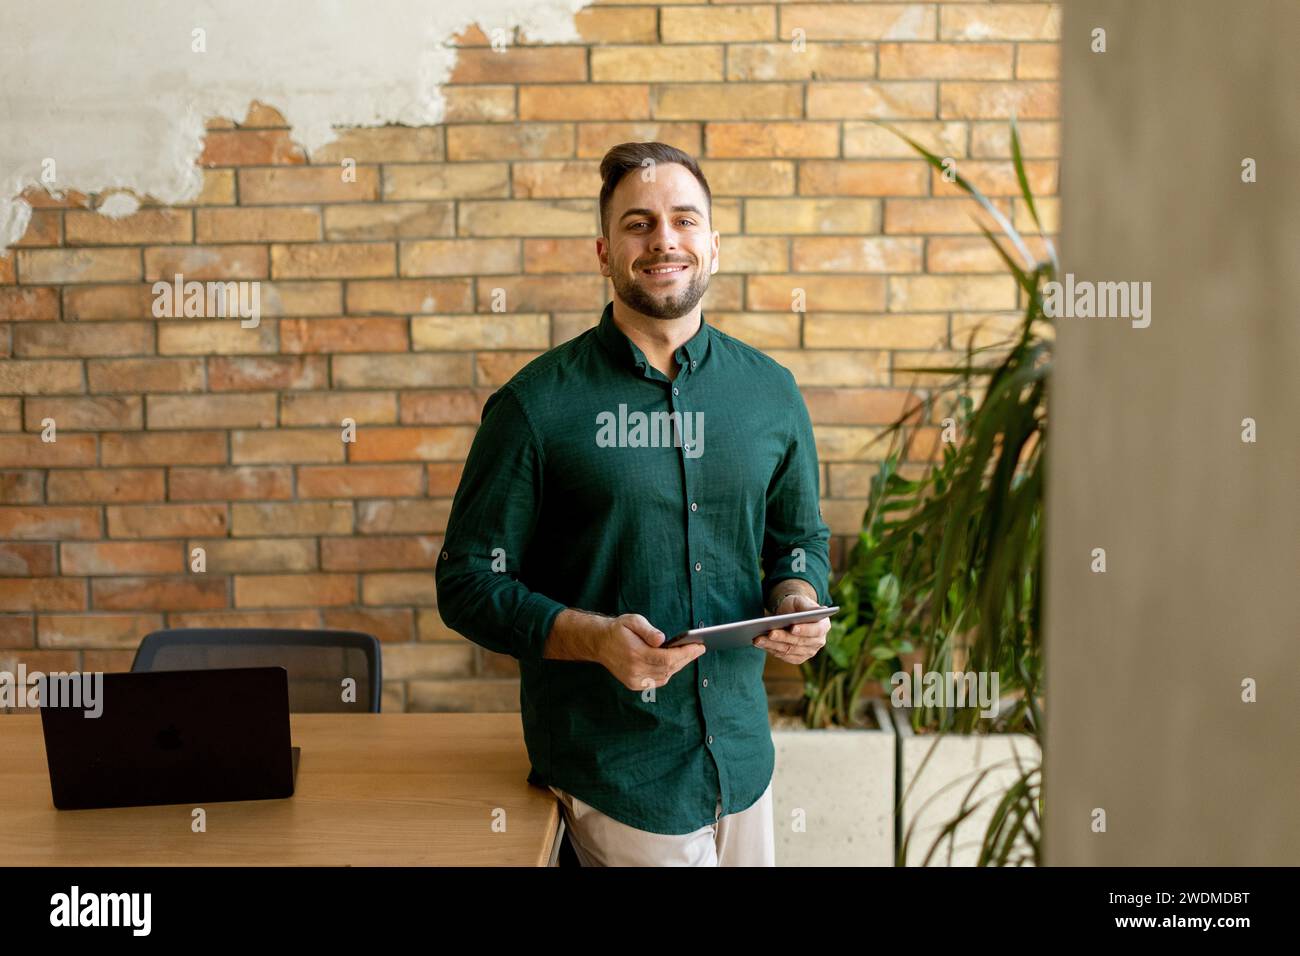 Un homme joyeux tient avec confiance une tablette numérique dans un espace de bureau contemporain avec un mur de briques apparentes, symbolisant un mélange de technologie moderne Banque D'Images